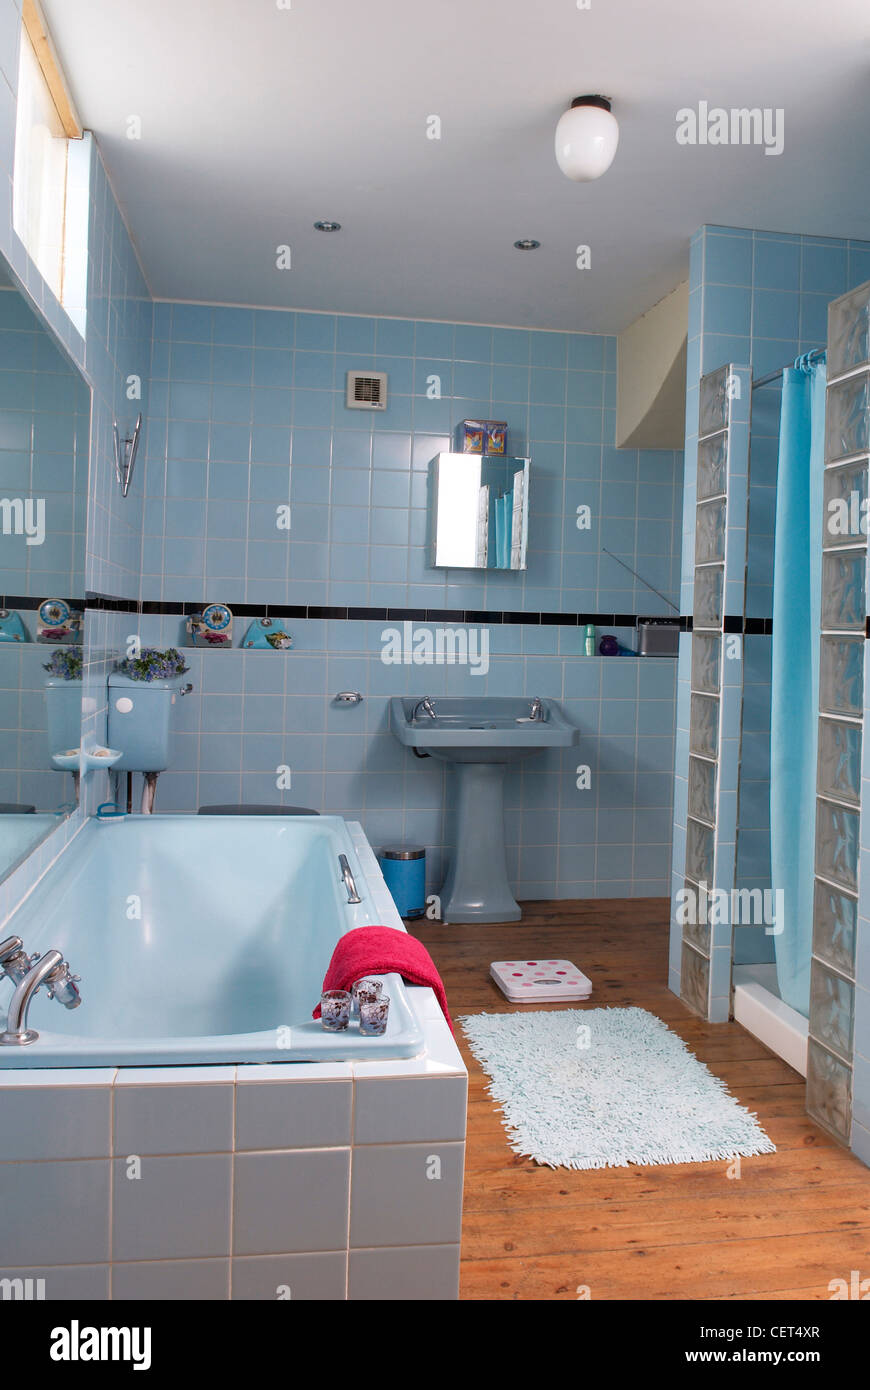 Brighton Interior Interiimage blau geflieste Badezimmerwände, blaue Senke,  blaue Toilette, blaue Bad, blauen Teppich auf Holzboden Stockfotografie -  Alamy